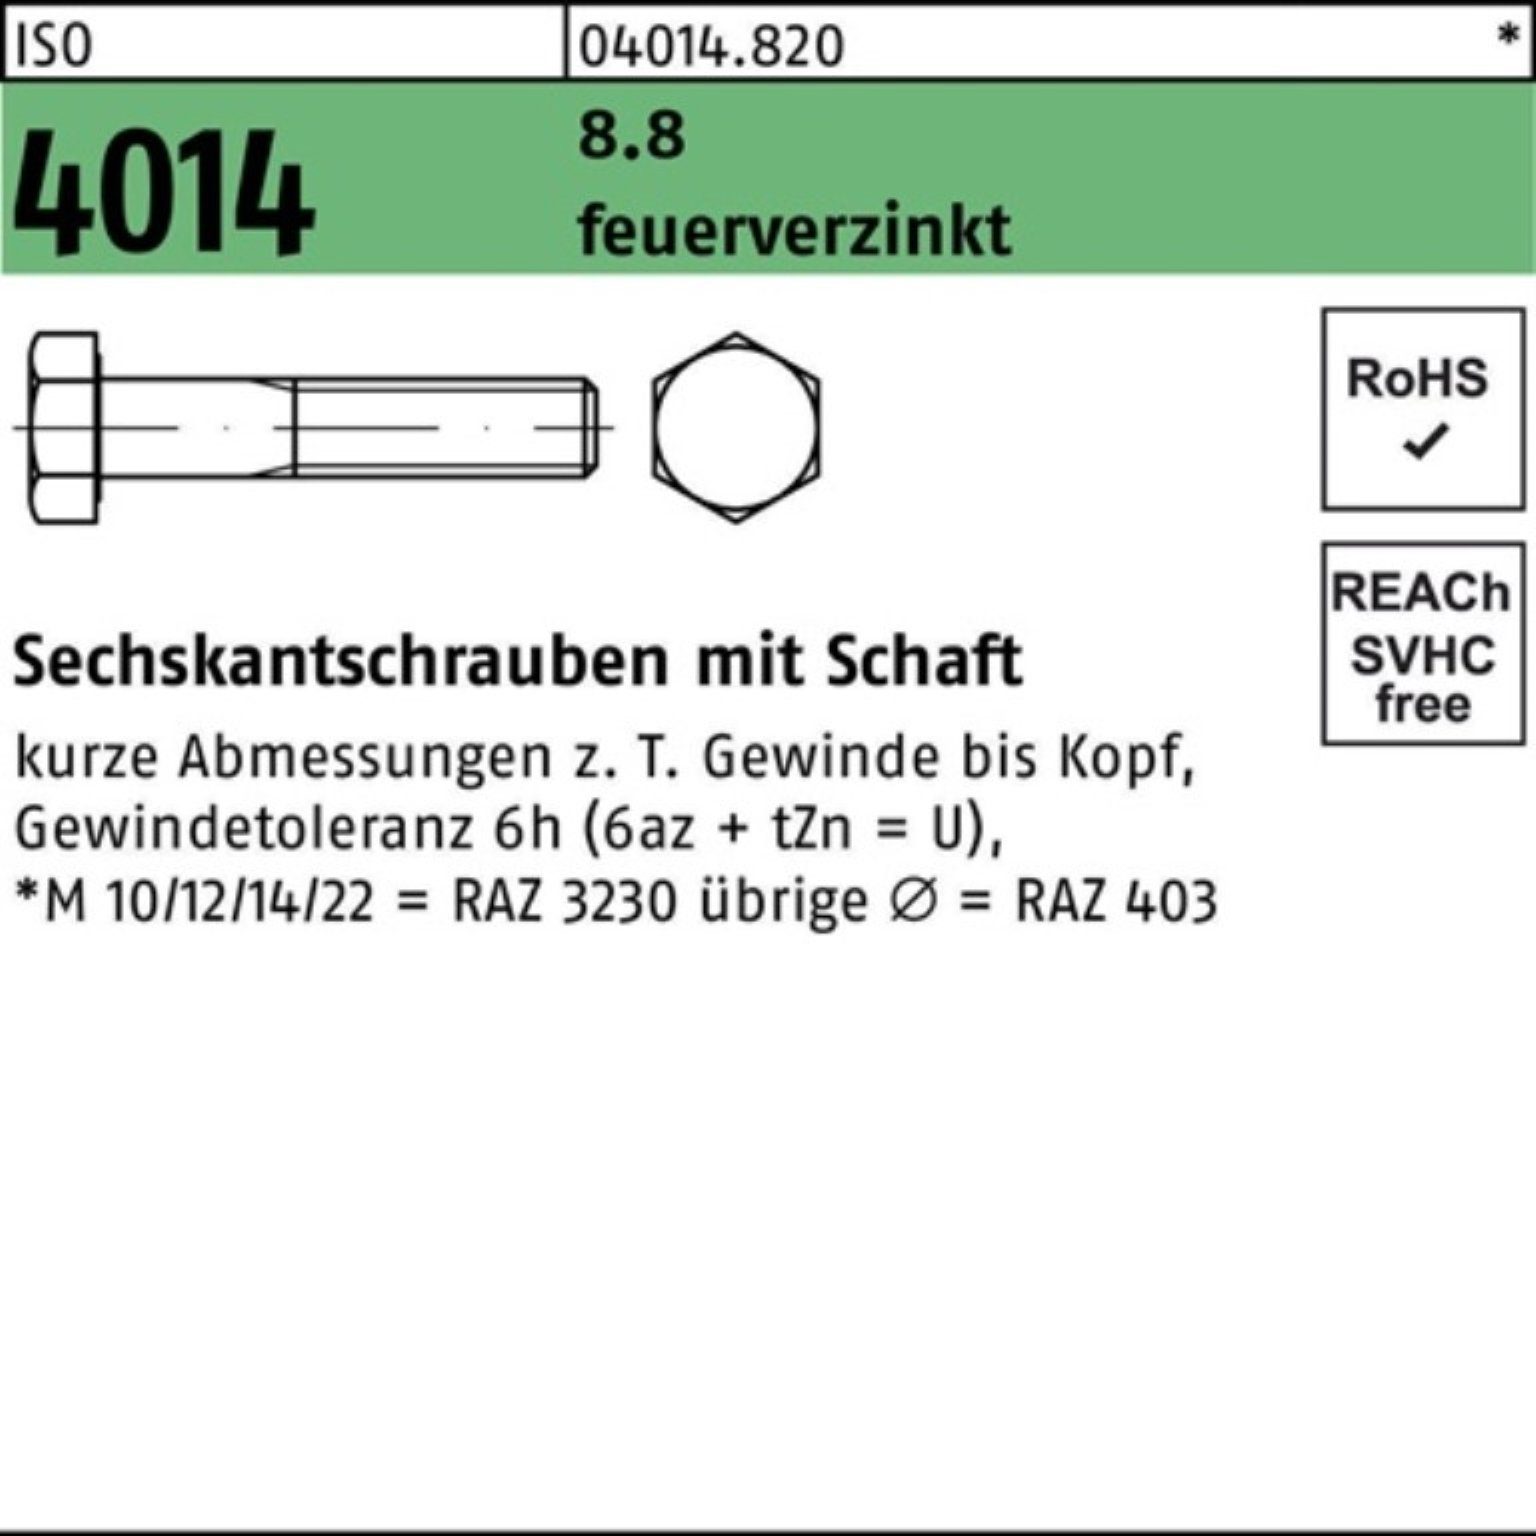 Bufab Sechskantschraube 100er Pack Sechskantschraube ISO 4014 Schaft M24x 160 8.8 feuerverz. 1